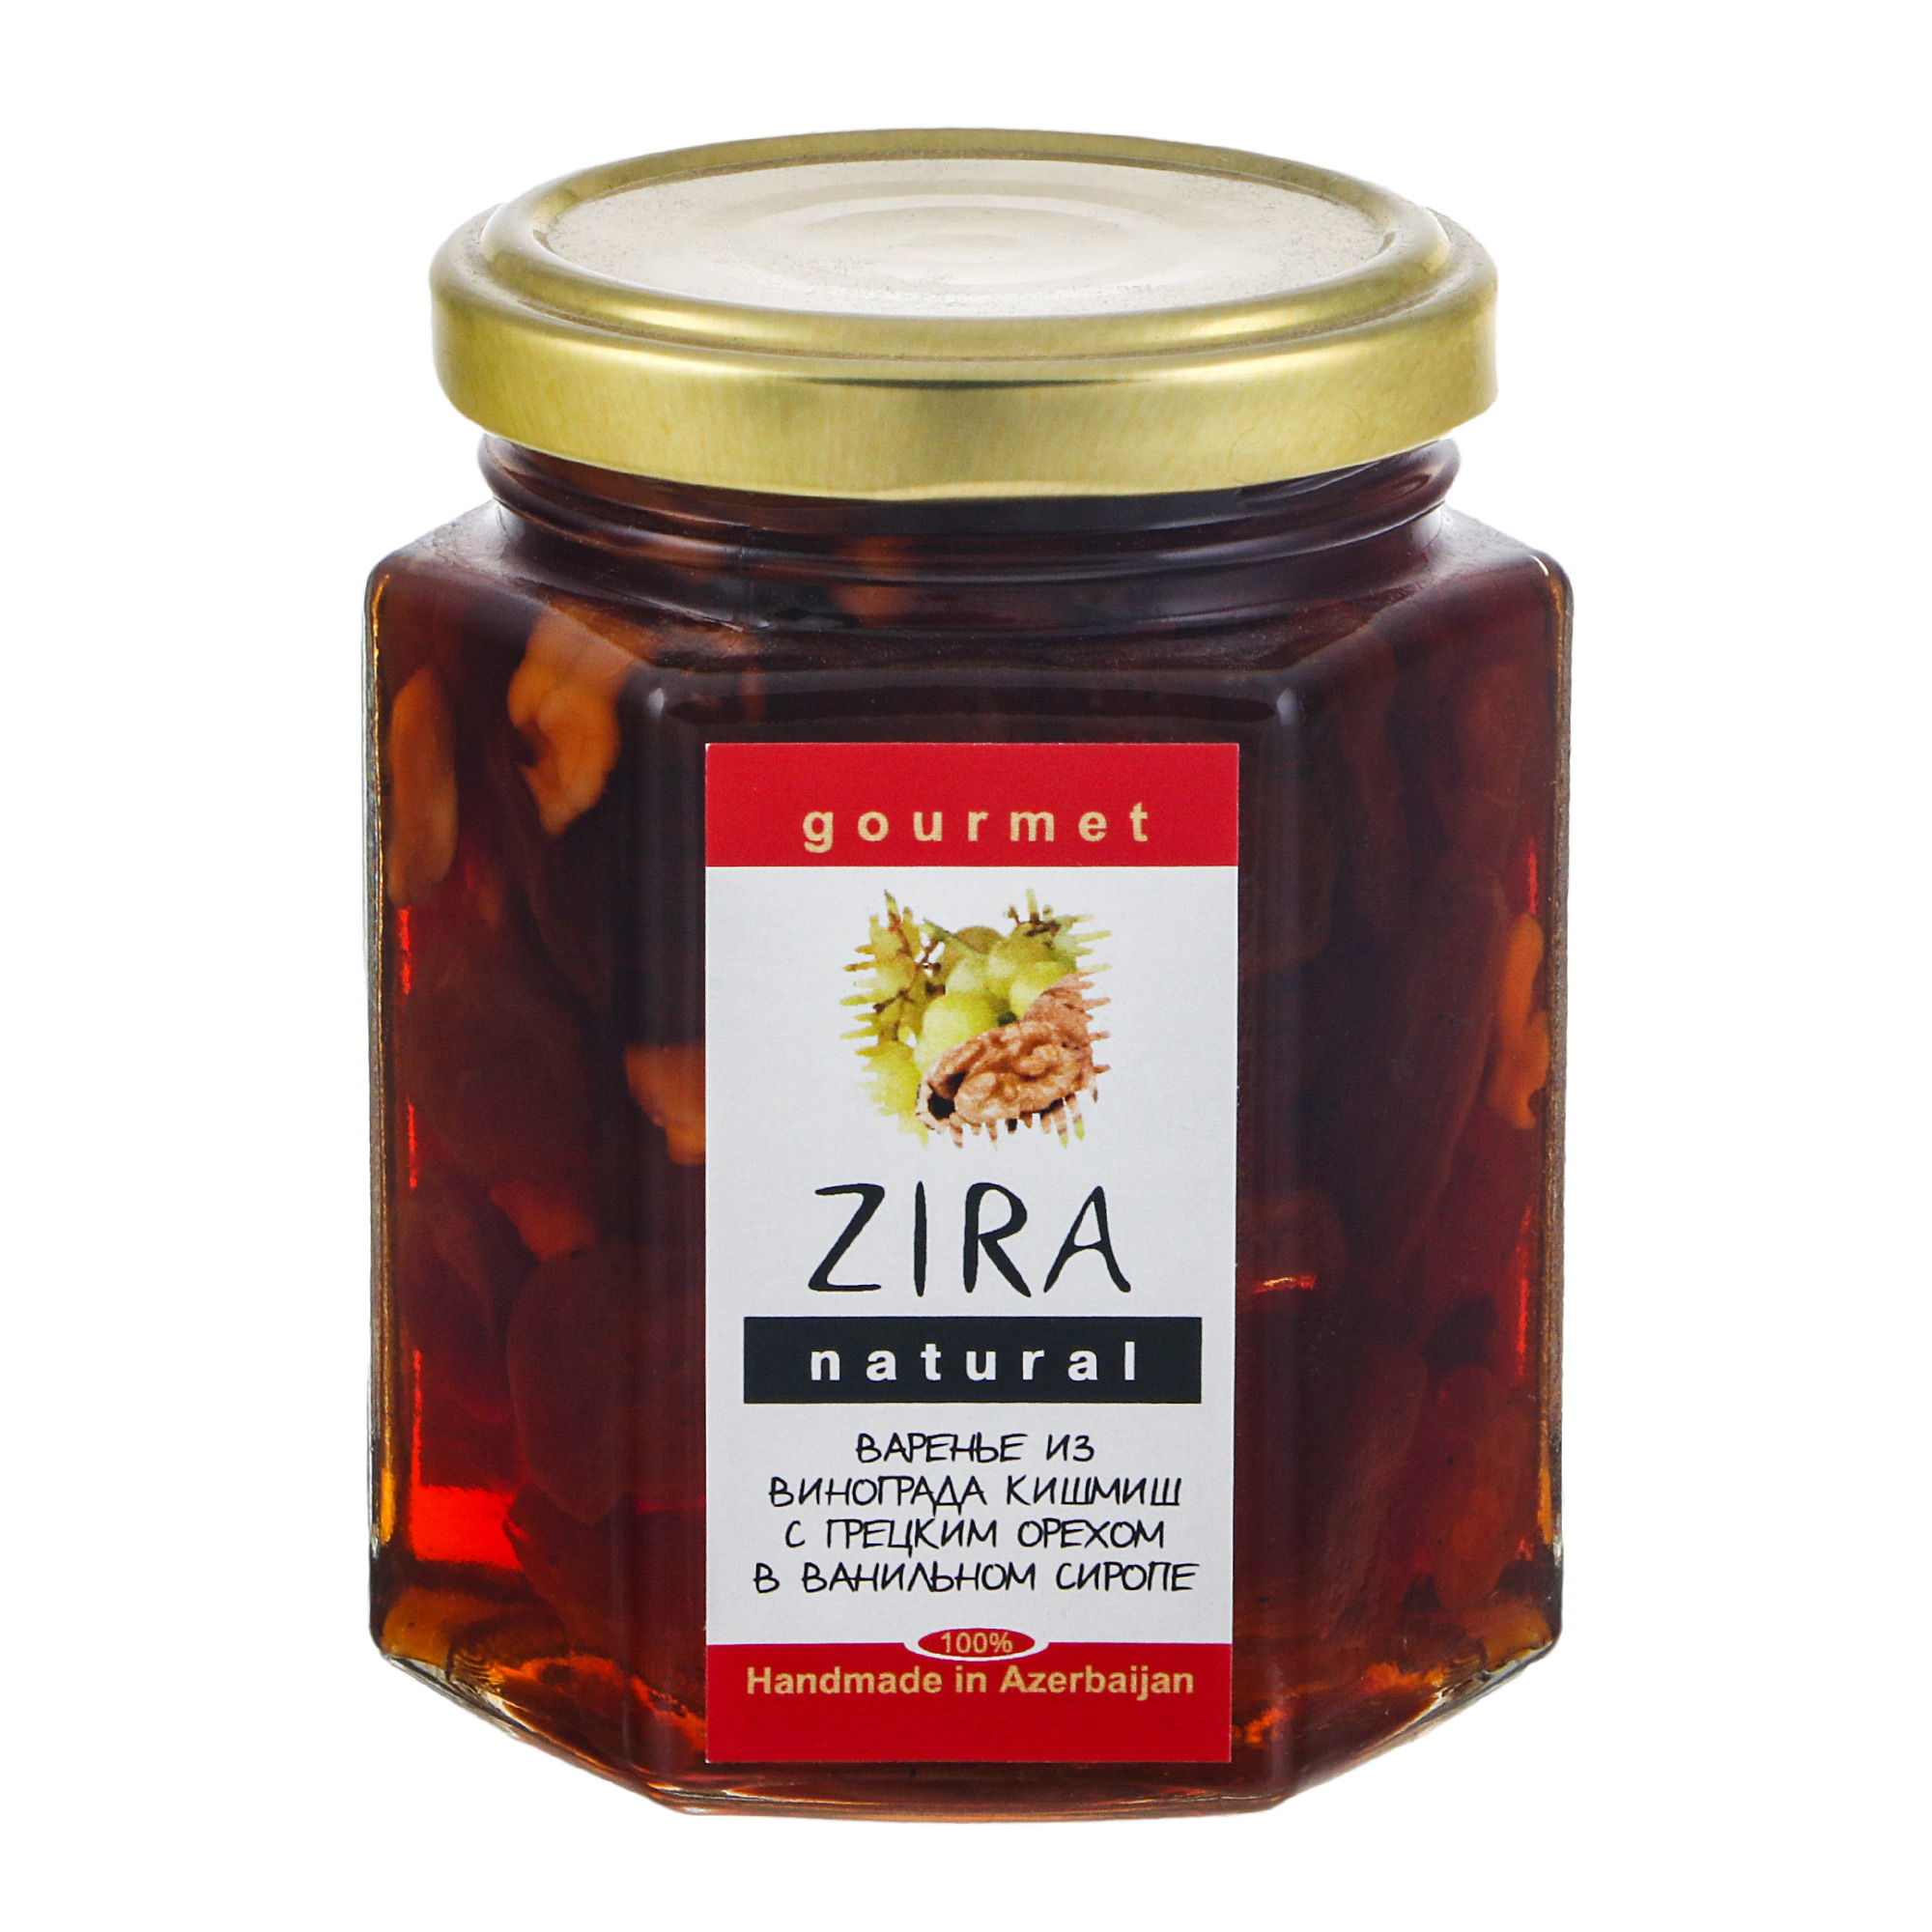 Варенье Zira из винограда кишмиш  грецким орехом в ванильном сиропе 200 г